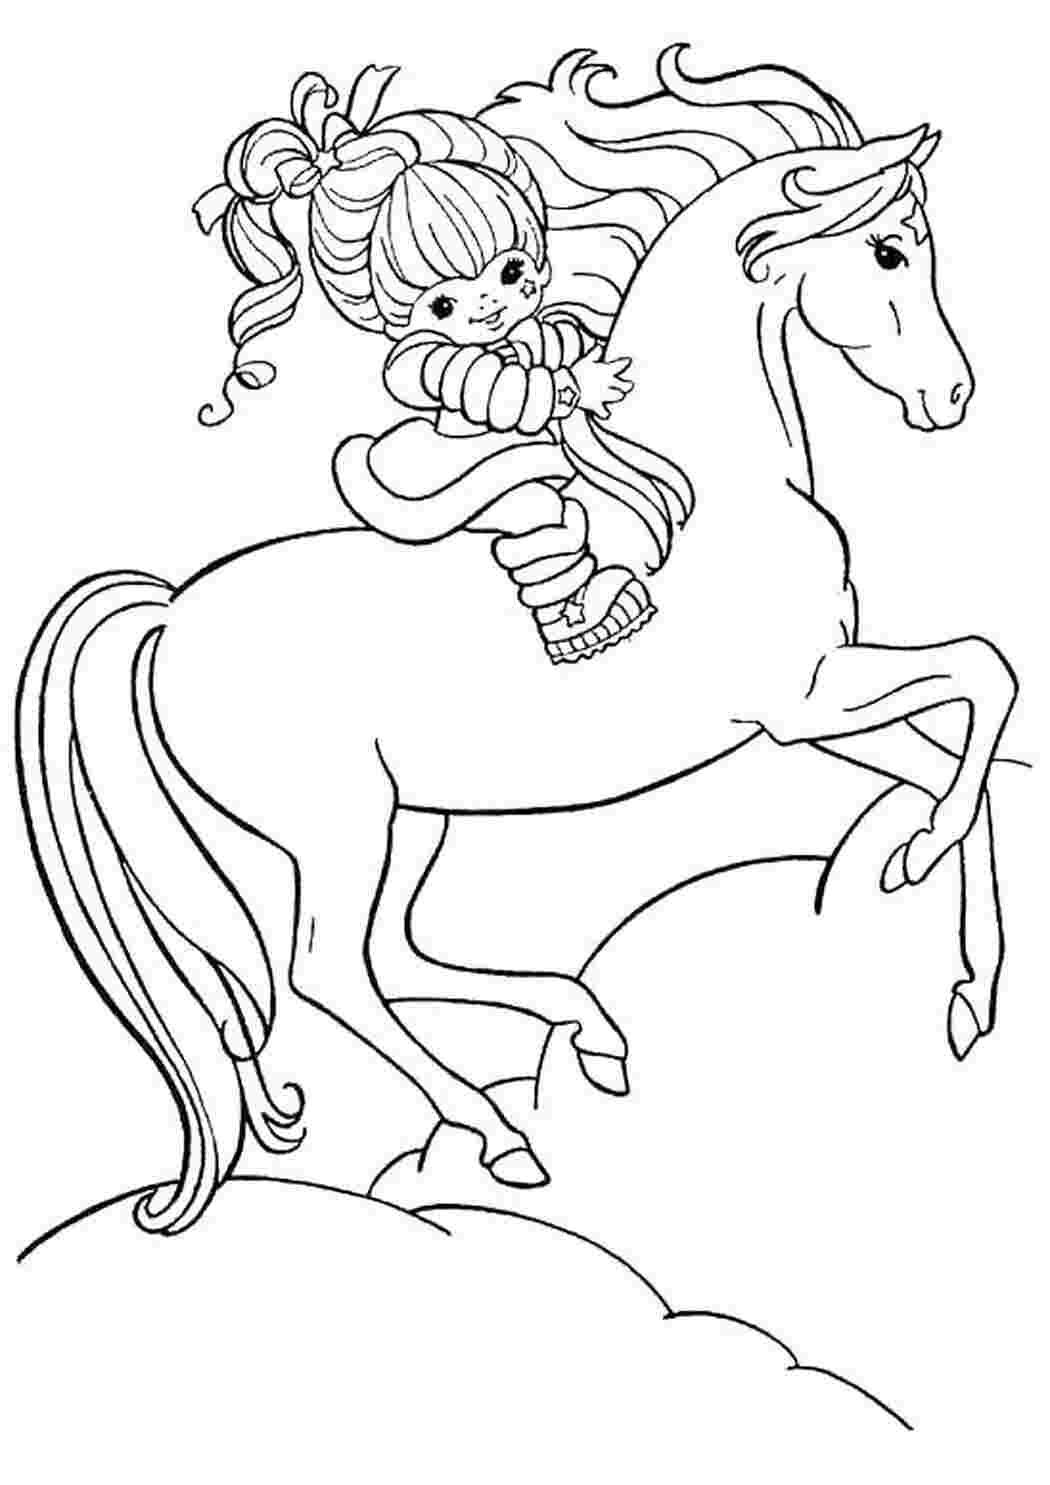 Раскраски Лошадь с девочкой Лошадь с девочкой Раскраски для девочек онлайн Раскраска для девочки